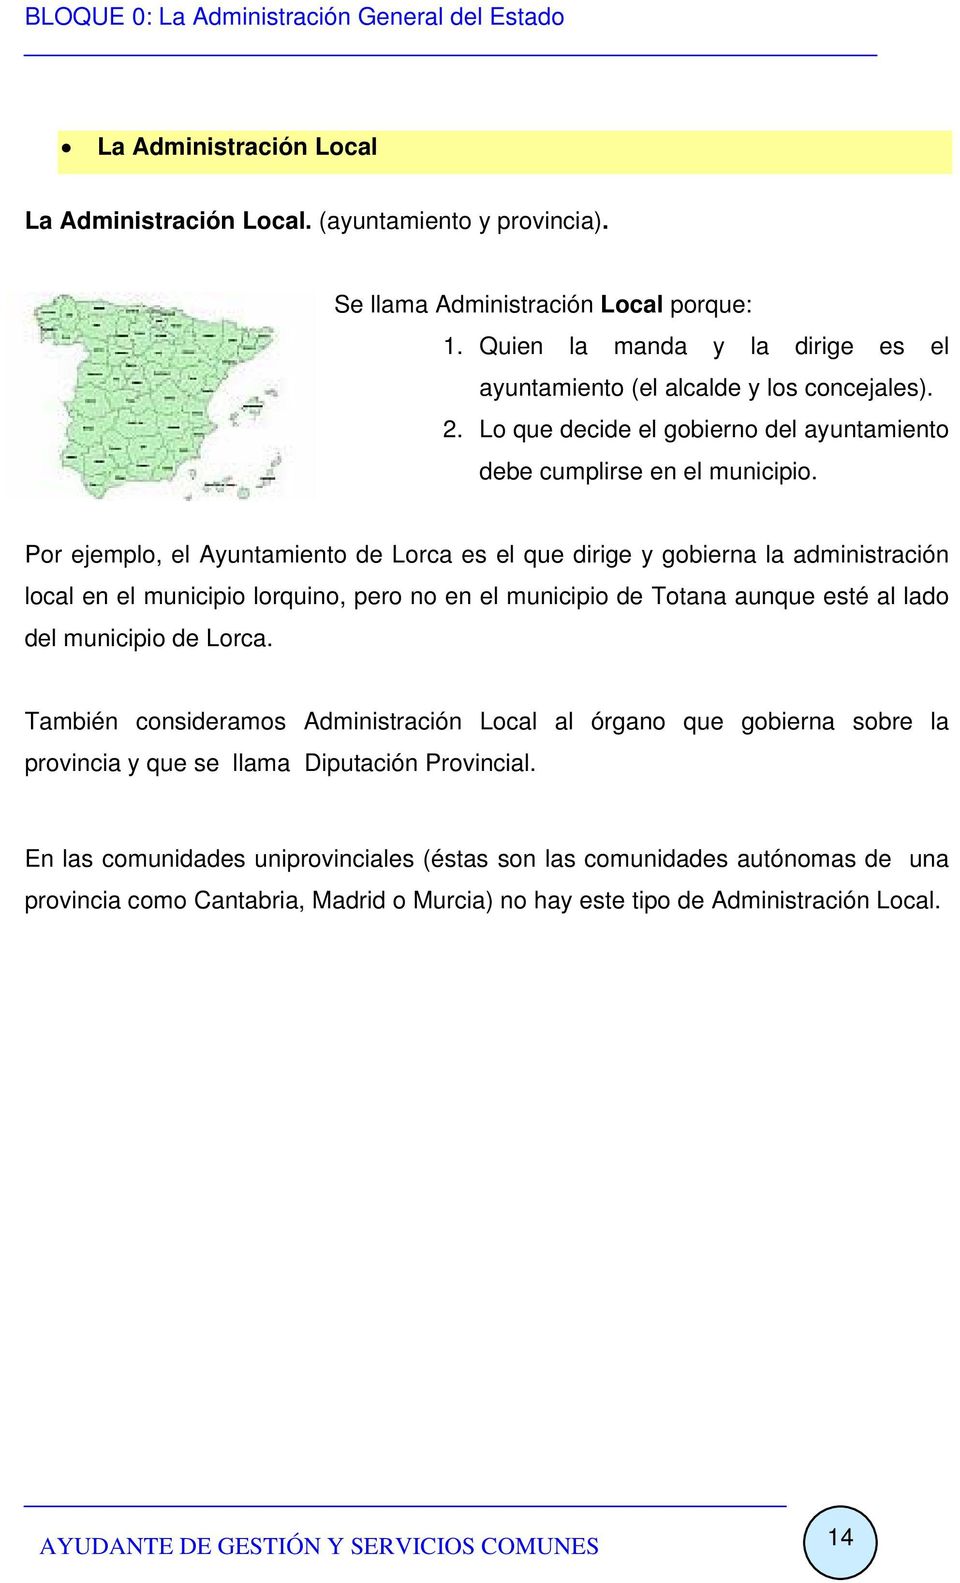 Por ejemplo, el Ayuntamiento de Lorca es el que dirige y gobierna la administración local en el municipio lorquino, pero no en el municipio de Totana aunque esté al lado del municipio de